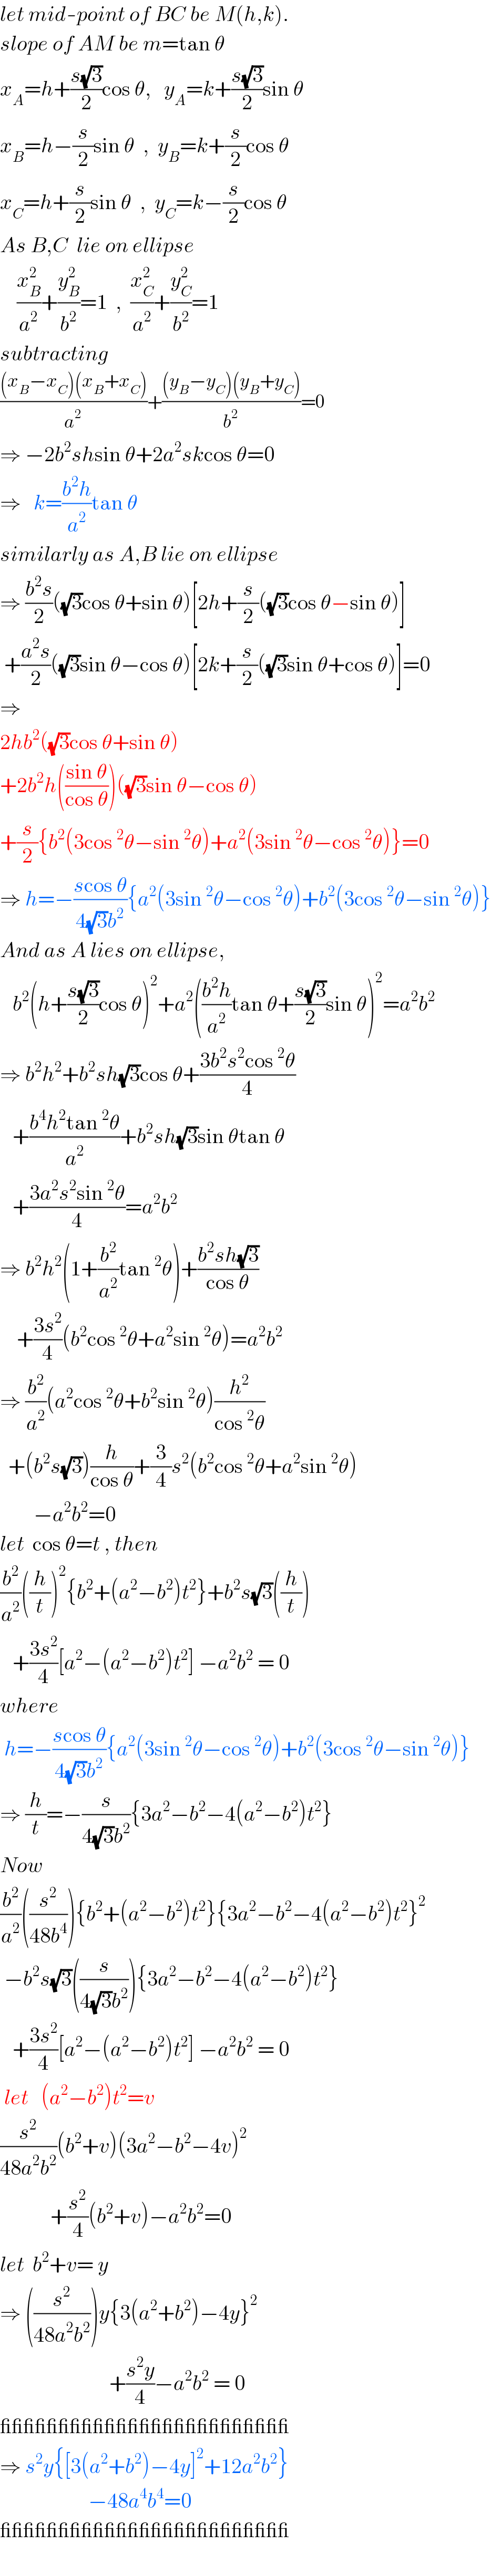 let mid-point of BC be M(h,k).  slope of AM be m=tan θ  x_A =h+((s(√3))/2)cos θ,   y_A =k+((s(√3))/2)sin θ  x_B =h−(s/2)sin θ  ,  y_B =k+(s/2)cos θ  x_C =h+(s/2)sin θ  ,  y_C =k−(s/2)cos θ  As B,C  lie on ellipse      (x_B ^2 /a^2 )+(y_B ^2 /b^2 )=1  ,  (x_C ^2 /a^2 )+(y_C ^2 /b^2 )=1  subtracting  (((x_B −x_C )(x_B +x_C ))/a^2 )+(((y_B −y_C )(y_B +y_C ))/b^2 )=0  ⇒ −2b^2 shsin θ+2a^2 skcos θ=0  ⇒   k=((b^2 h)/a^2 )tan θ  similarly as A,B lie on ellipse  ⇒ ((b^2 s)/2)((√3)cos θ+sin θ)[2h+(s/2)((√3)cos θ−sin θ)]   +((a^2 s)/2)((√3)sin θ−cos θ)[2k+(s/2)((√3)sin θ+cos θ)]=0  ⇒  2hb^2 ((√3)cos θ+sin θ)  +2b^2 h(((sin θ)/(cos θ)))((√3)sin θ−cos θ)  +(s/2){b^2 (3cos^2 θ−sin^2 θ)+a^2 (3sin^2 θ−cos^2 θ)}=0  ⇒ h=−((scos θ)/(4(√3)b^2 )){a^2 (3sin^2 θ−cos^2 θ)+b^2 (3cos^2 θ−sin^2 θ)}  And as A lies on ellipse,     b^2 (h+((s(√3))/2)cos θ)^2 +a^2 (((b^2 h)/a^2 )tan θ+((s(√3))/2)sin θ)^2 =a^2 b^2   ⇒ b^2 h^2 +b^2 sh(√3)cos θ+((3b^2 s^2 cos^2 θ)/4)     +((b^4 h^2 tan^2 θ)/a^2 )+b^2 sh(√3)sin θtan θ     +((3a^2 s^2 sin^2 θ)/4)=a^2 b^2   ⇒ b^2 h^2 (1+(b^2 /a^2 )tan^2 θ)+((b^2 sh(√3))/(cos θ))      +((3s^2 )/4)(b^2 cos^2 θ+a^2 sin^2 θ)=a^2 b^2   ⇒ (b^2 /a^2 )(a^2 cos^2 θ+b^2 sin^2 θ)(h^2 /(cos^2 θ))    +(b^2 s(√3))(h/(cos θ))+(3/4)s^2 (b^2 cos^2 θ+a^2 sin^2 θ)          −a^2 b^2 =0  let  cos θ=t , then  (b^2 /a^2 )((h/t))^2 {b^2 +(a^2 −b^2 )t^2 }+b^2 s(√3)((h/t))     +((3s^2 )/4)[a^2 −(a^2 −b^2 )t^2 ] −a^2 b^2  = 0  where   h=−((scos θ)/(4(√3)b^2 )){a^2 (3sin^2 θ−cos^2 θ)+b^2 (3cos^2 θ−sin^2 θ)}  ⇒ (h/t)=−(s/(4(√3)b^2 )){3a^2 −b^2 −4(a^2 −b^2 )t^2 }  Now  (b^2 /a^2 )((s^2 /(48b^4 ))){b^2 +(a^2 −b^2 )t^2 }{3a^2 −b^2 −4(a^2 −b^2 )t^2 }^2    −b^2 s(√3)((s/(4(√3)b^2 ))){3a^2 −b^2 −4(a^2 −b^2 )t^2 }     +((3s^2 )/4)[a^2 −(a^2 −b^2 )t^2 ] −a^2 b^2  = 0   let   (a^2 −b^2 )t^2 =v  (s^2 /(48a^2 b^2 ))(b^2 +v)(3a^2 −b^2 −4v)^2               +(s^2 /4)(b^2 +v)−a^2 b^2 =0  let  b^2 +v= y  ⇒ ((s^2 /(48a^2 b^2 )))y{3(a^2 +b^2 )−4y}^2                             +((s^2 y)/4)−a^2 b^2  = 0  _________________________  ⇒ s^2 y{[3(a^2 +b^2 )−4y]^2 +12a^2 b^2 }                       −48a^4 b^4 =0  _________________________    